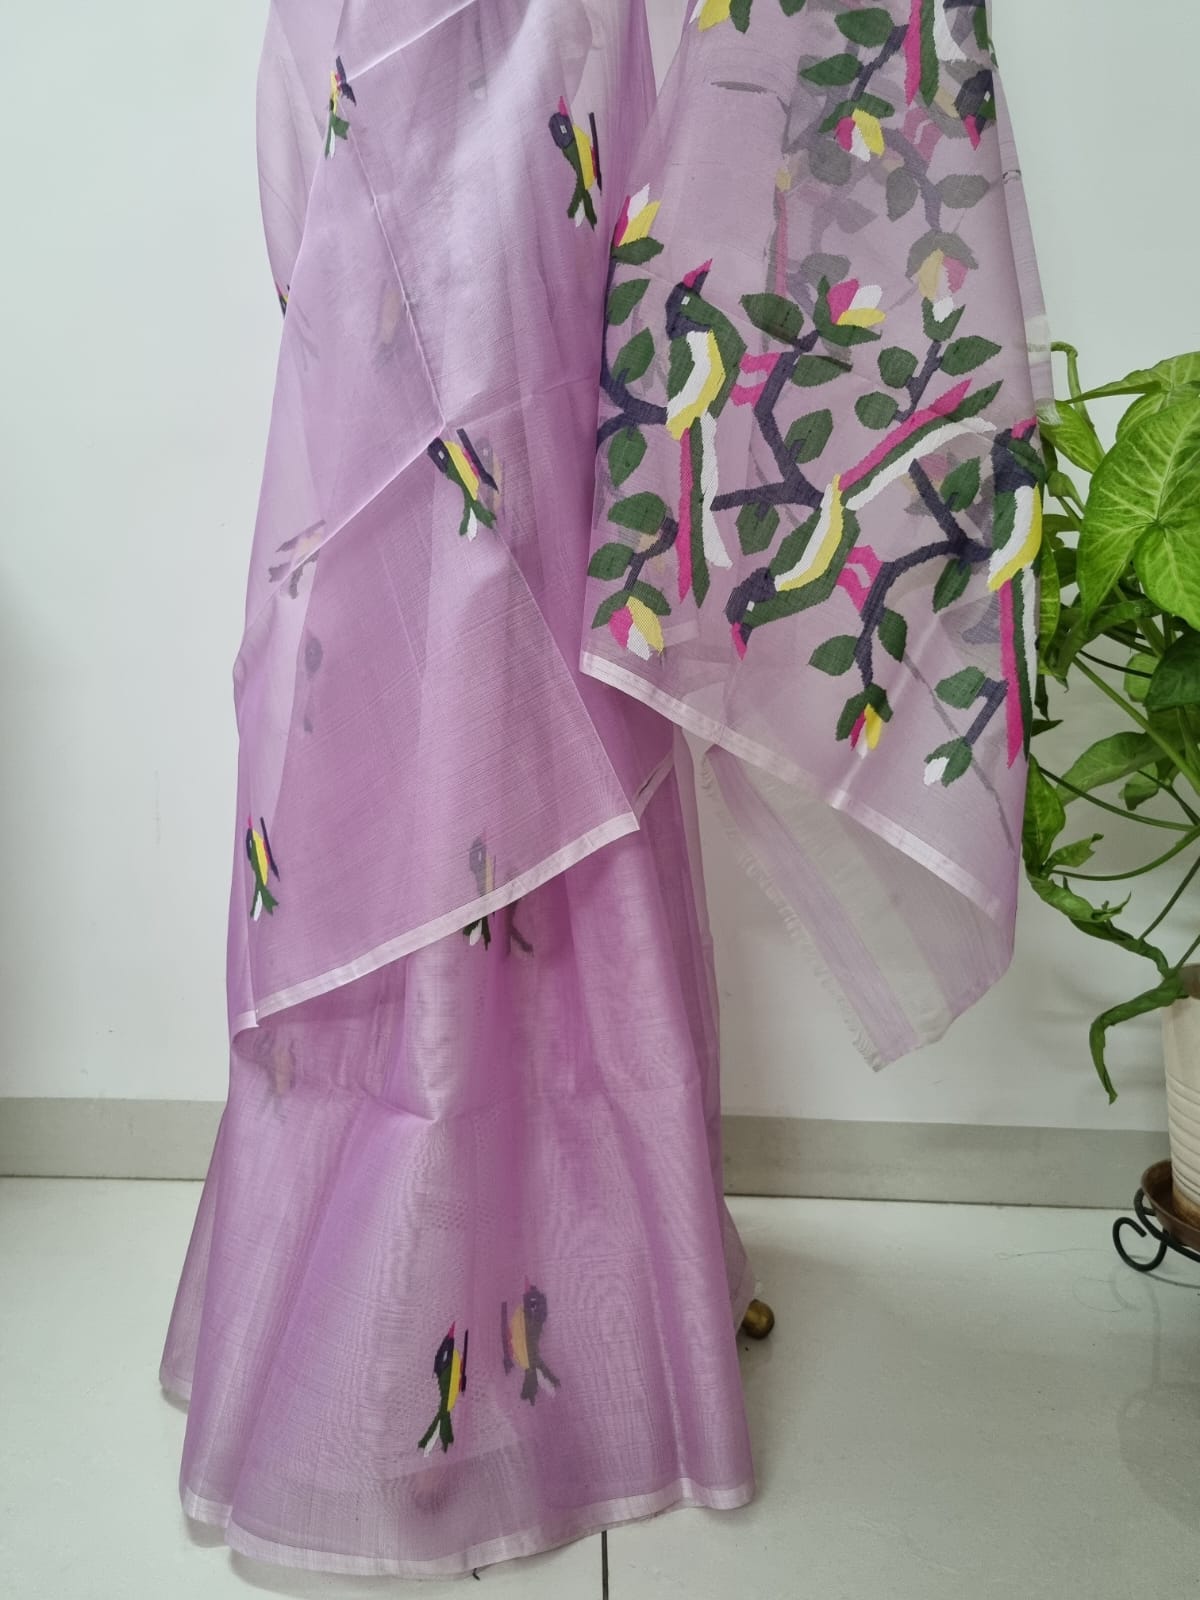 Onion Pink - Handloom Organza Saree with Jamdani weaving